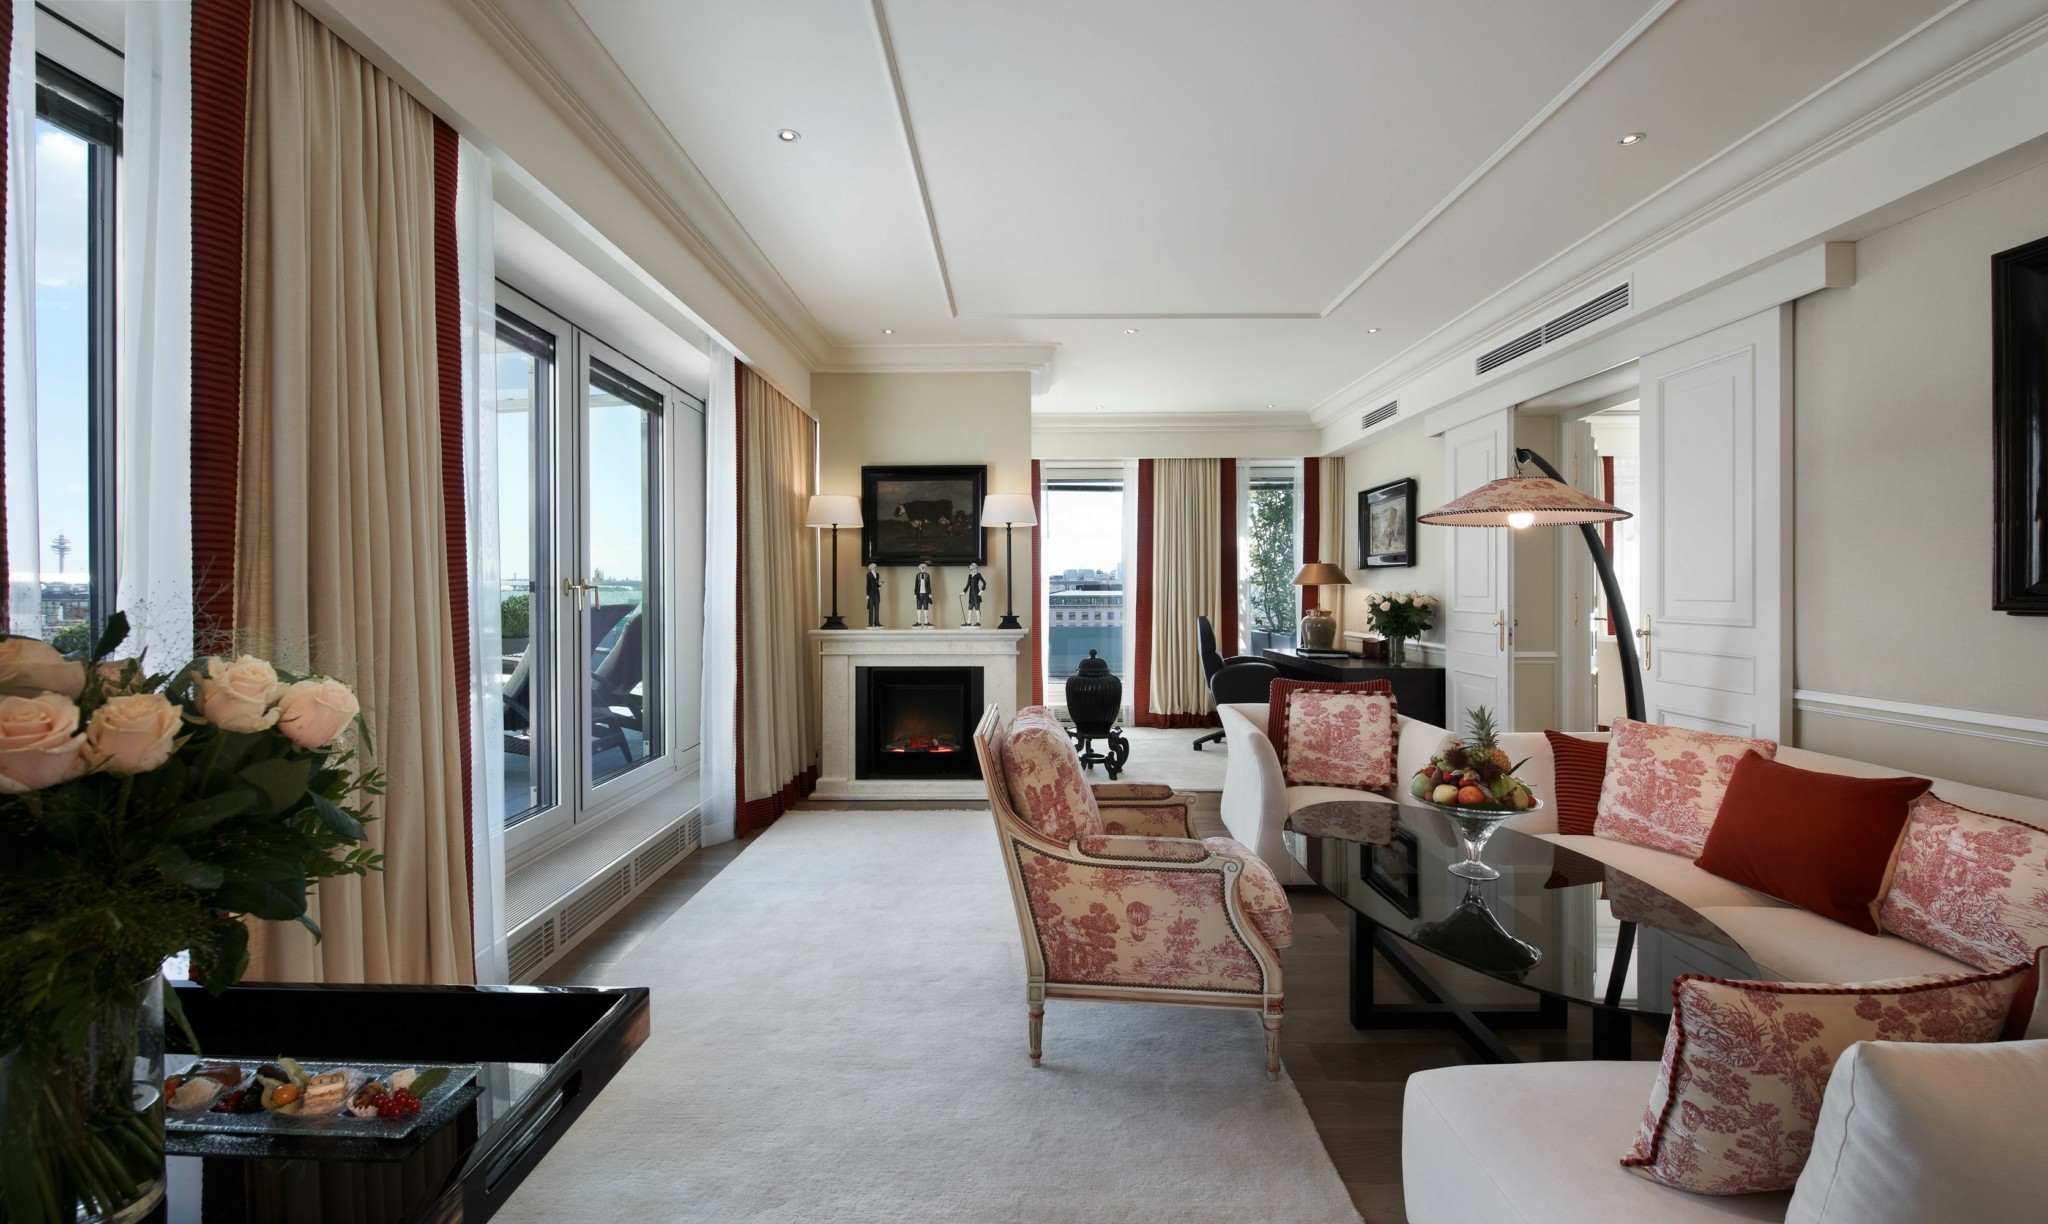 Δωμάτιο με θέα: Το αυτοκρατορικό παραμύθι της Βιέννης ζωντανεύει στη σουίτα Madame Butterfly του ιστορικού Hotel Sacher